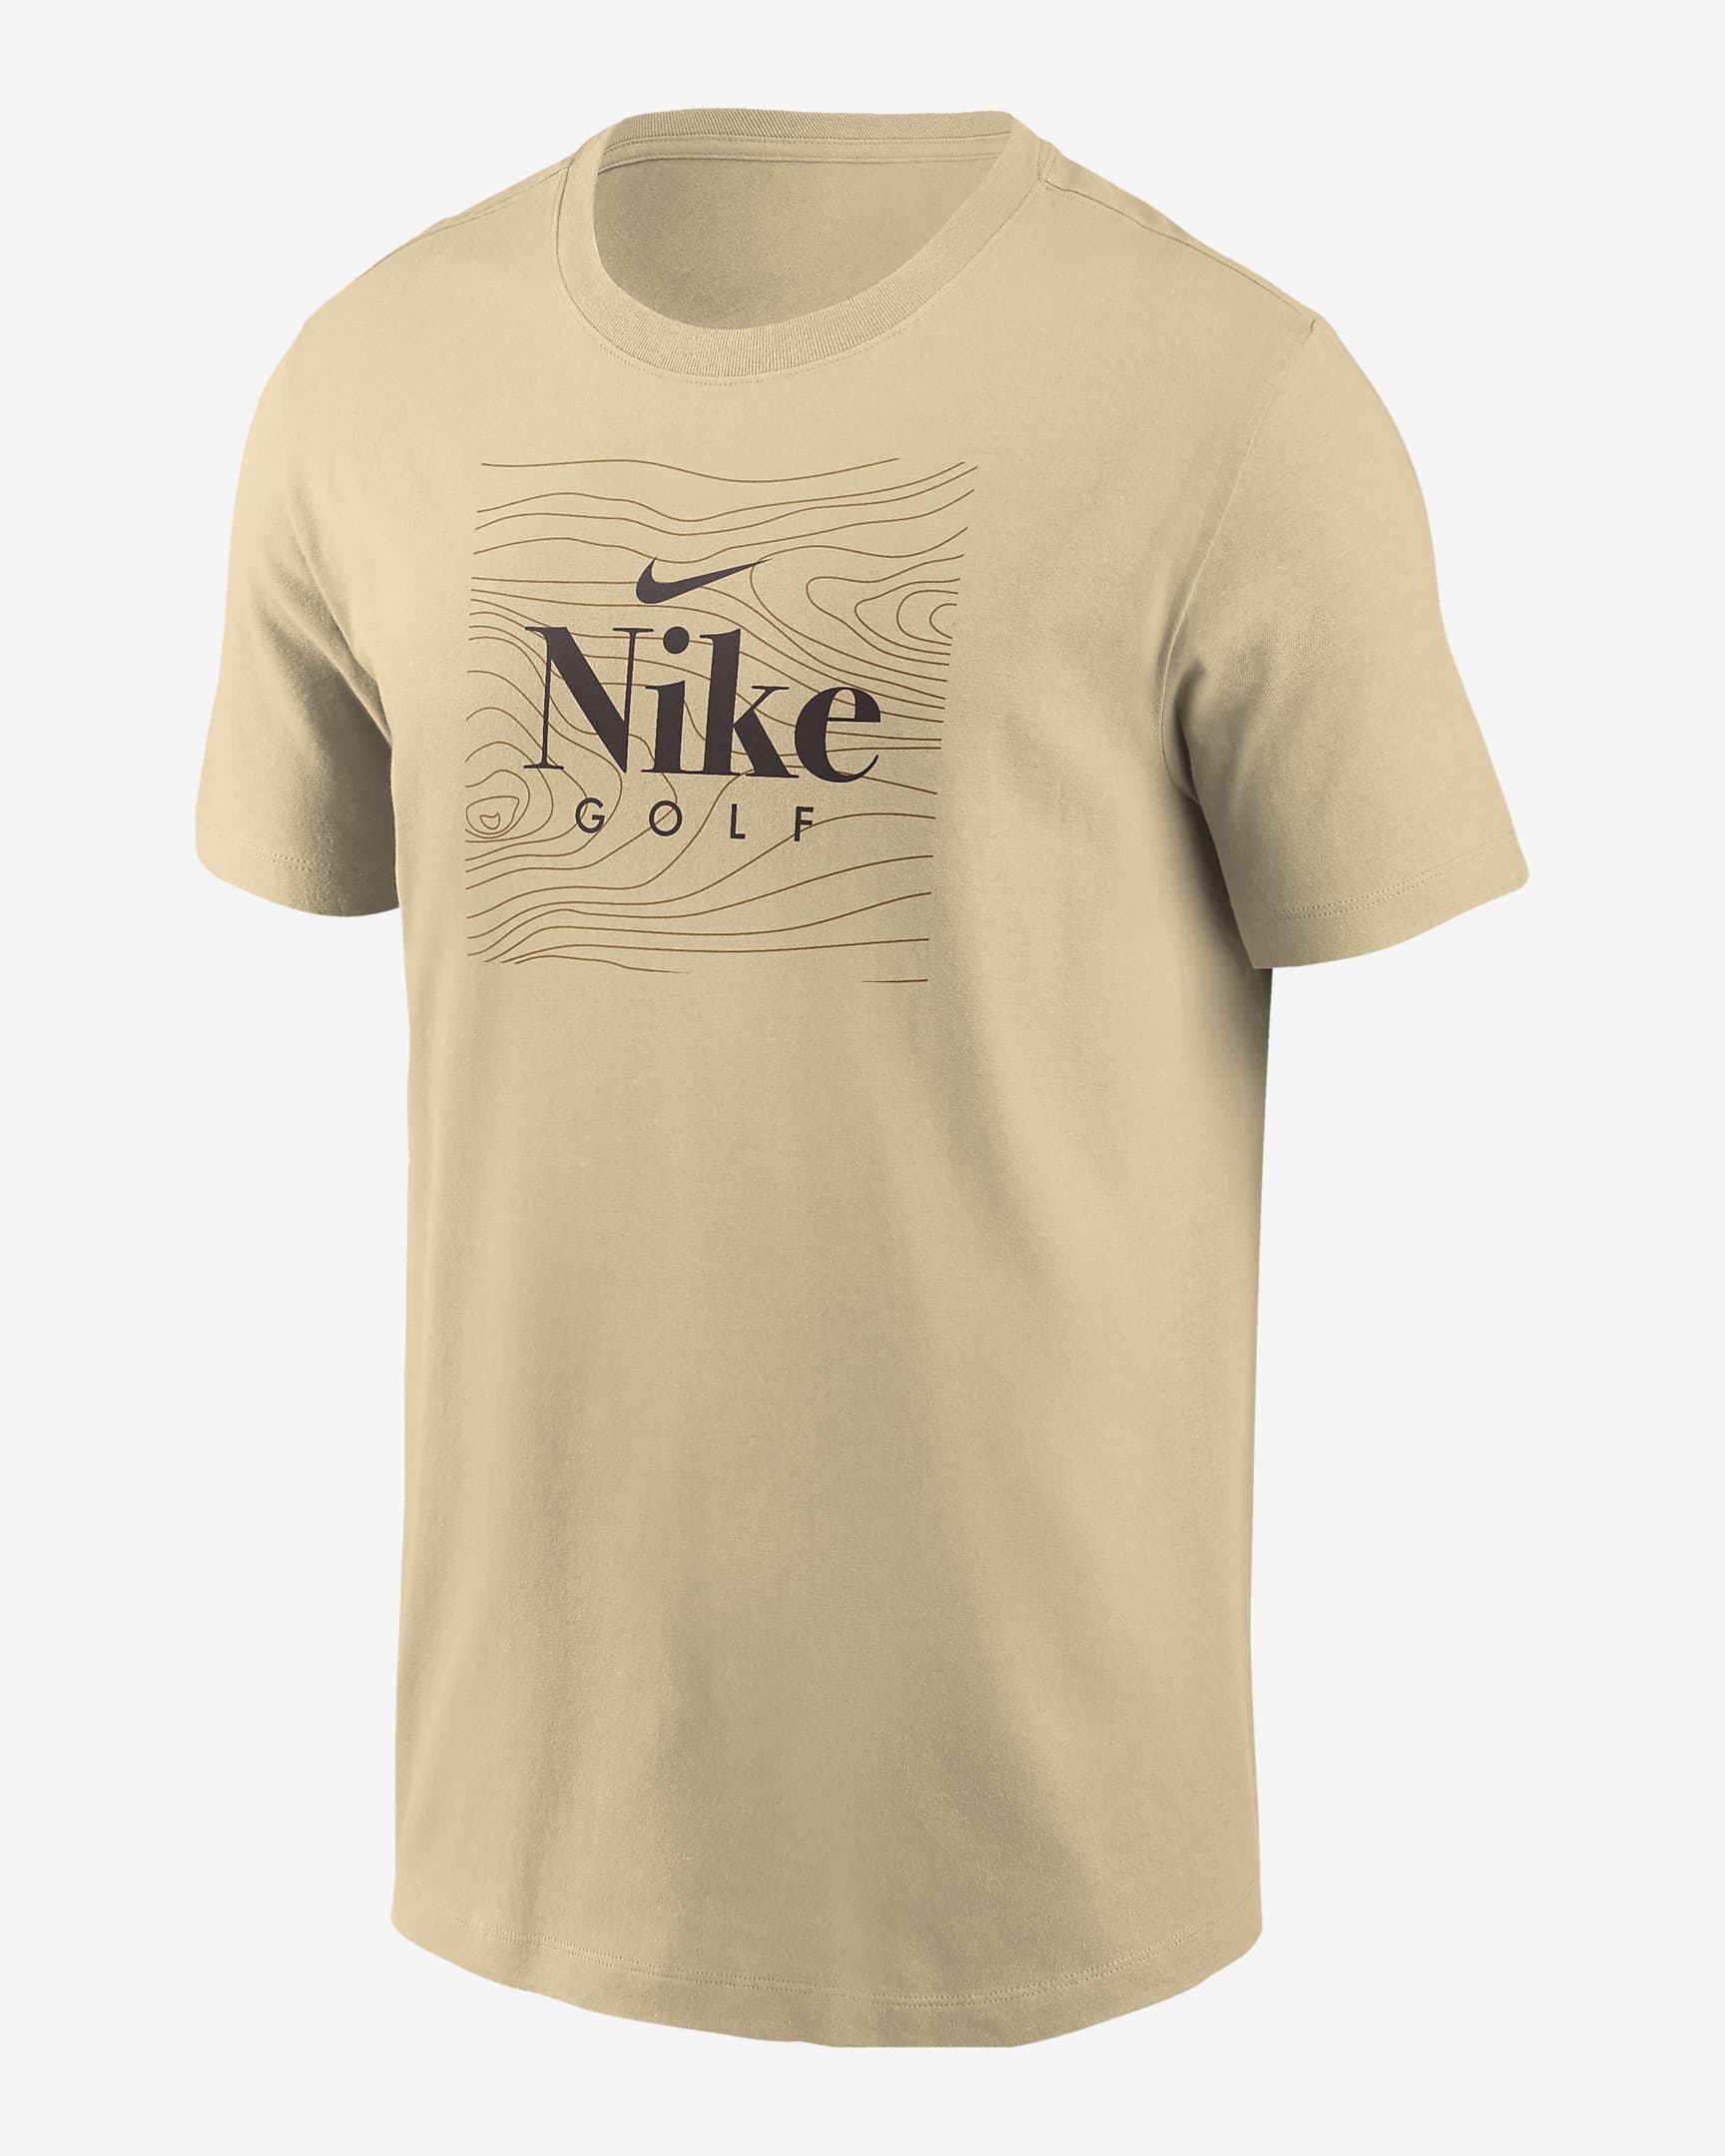 Nike Men's Golf T-Shirt - Team Gold